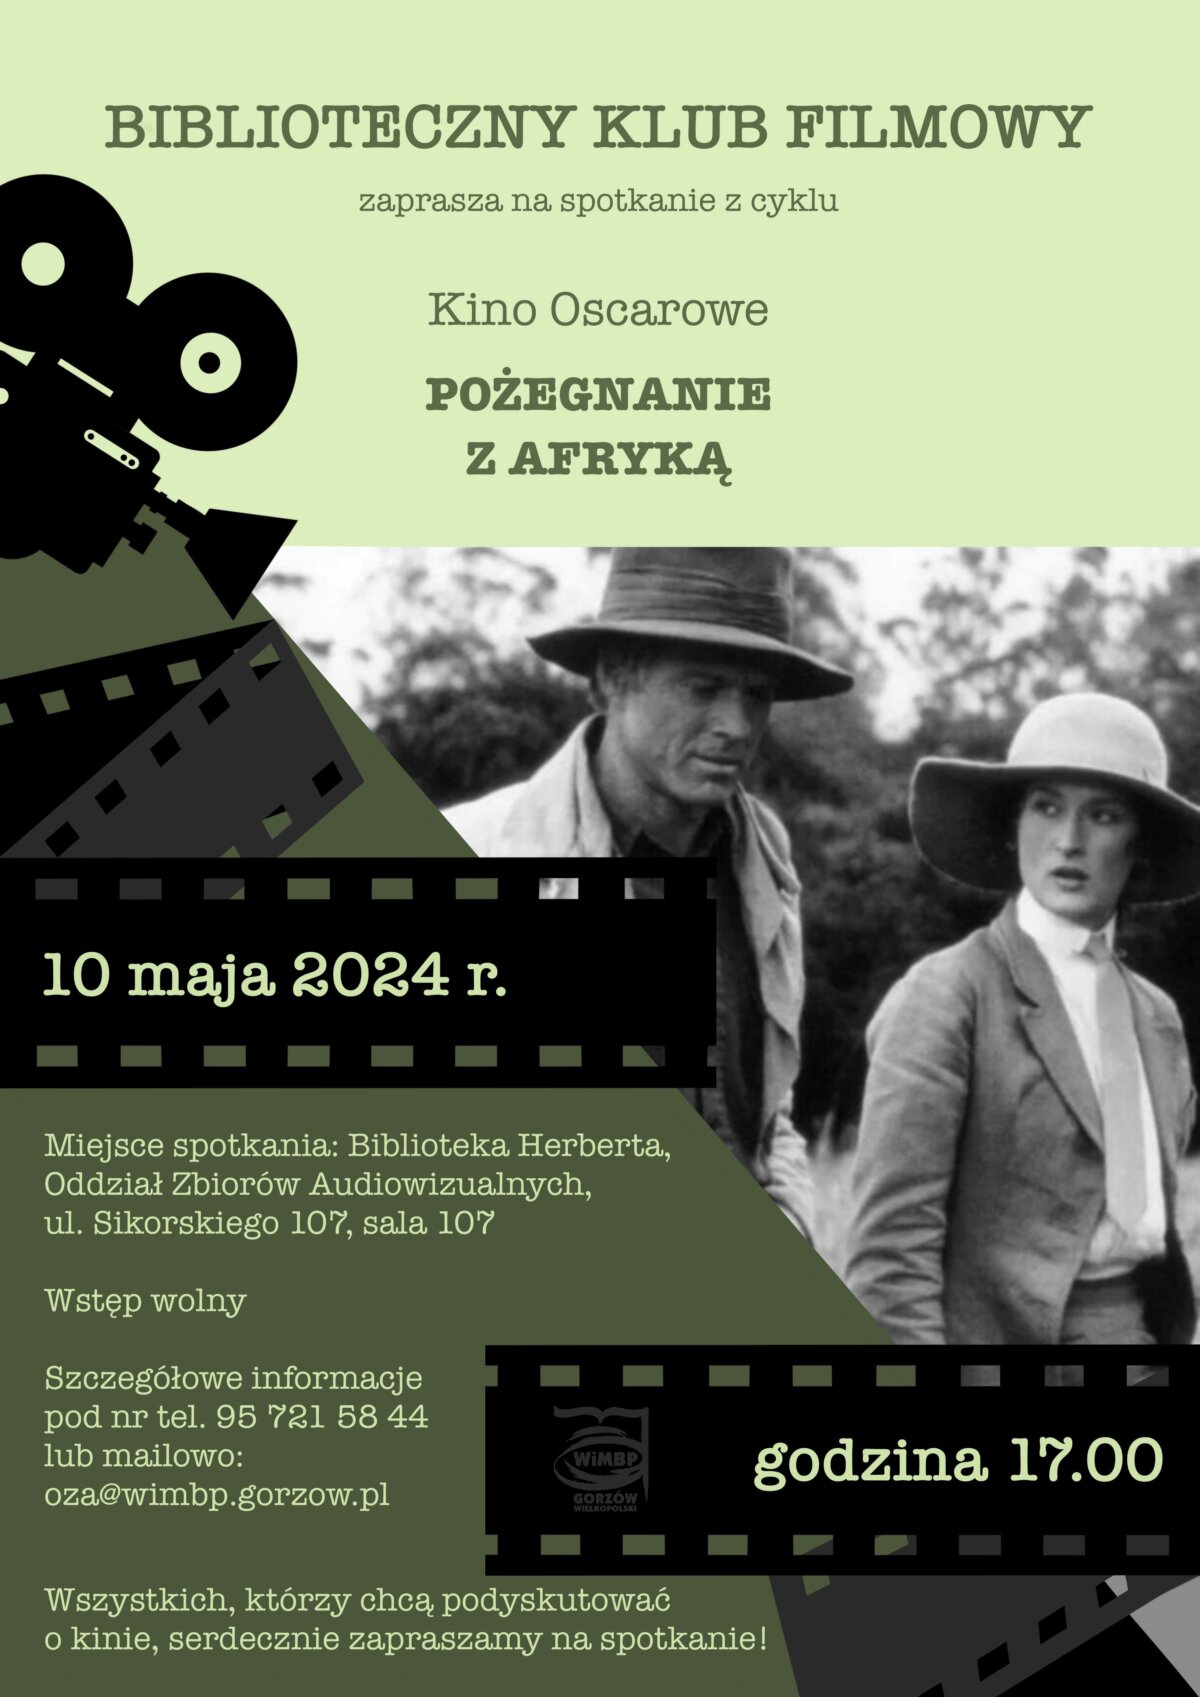 plakat promujący wydarzenie Bibliotecznego Klubu Filmowego.